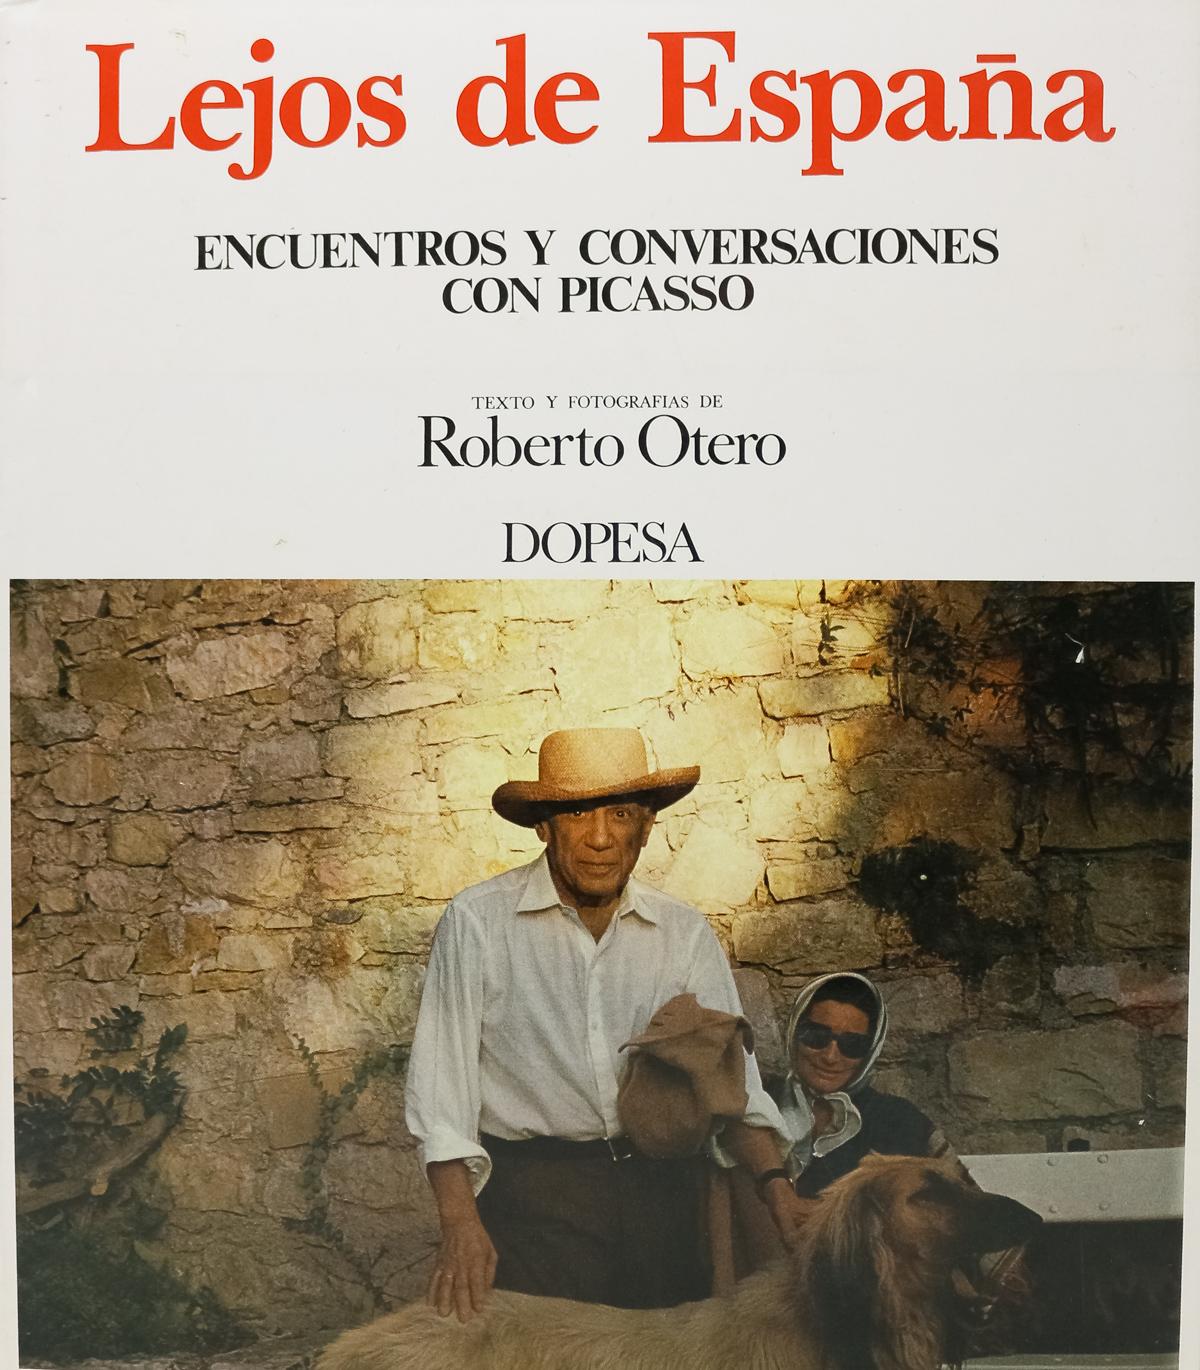 "LEJOS DE ESPAÑA"